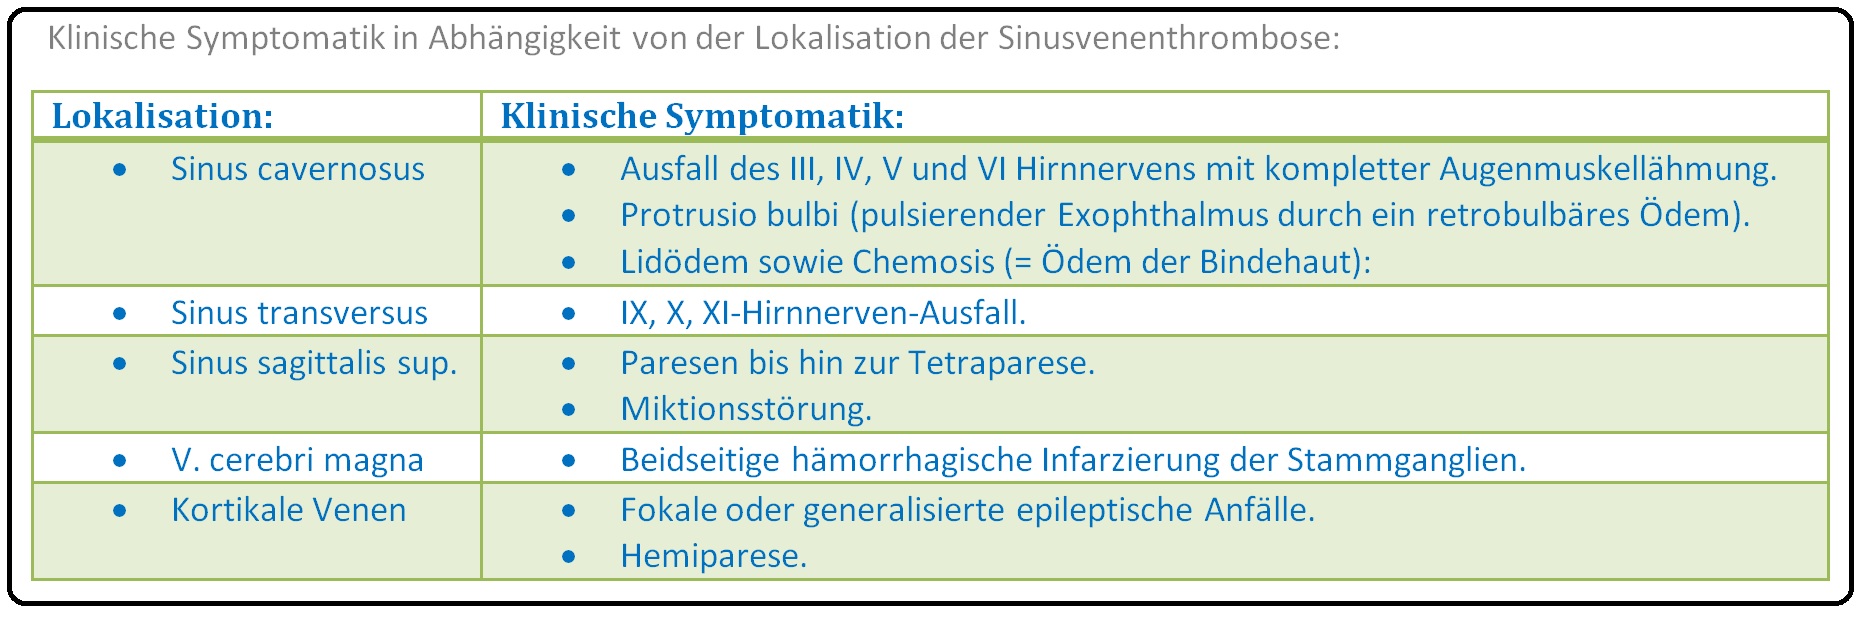 044 Klinische Symptomatik in Abhängigkeit von der Lokalisation der Sinusvenenthrombose